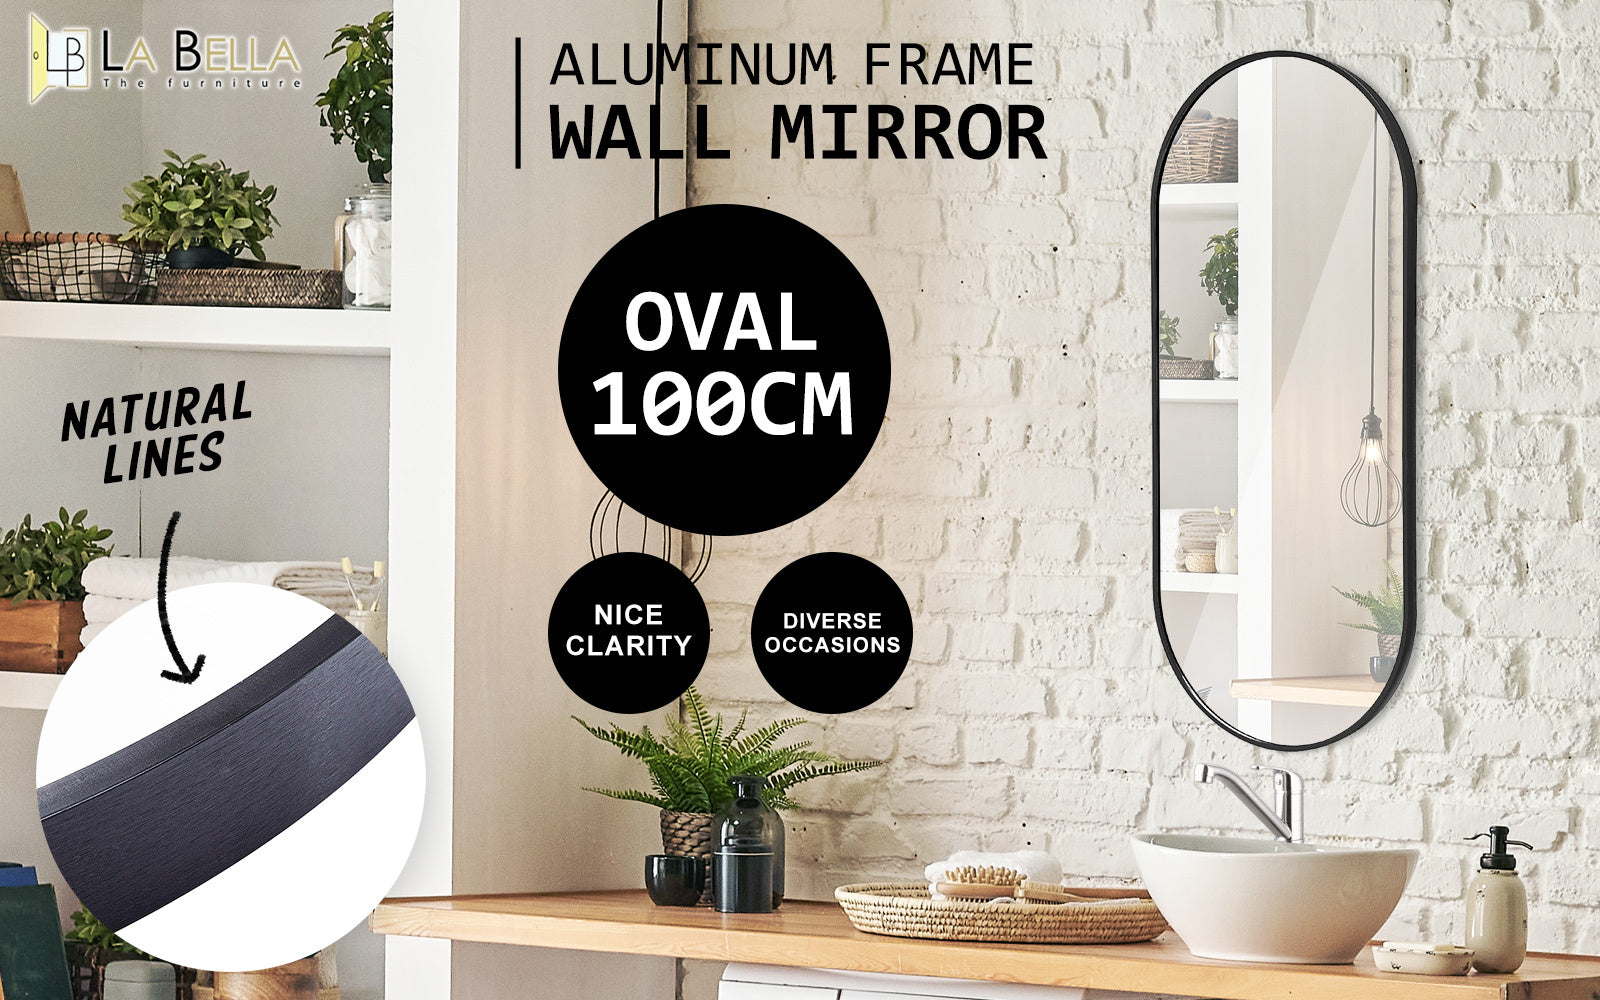 2 Set La Bella Black Wall Mirror Oval Aluminum Frame Makeup Decor Bathroom Vanity 45x100cm